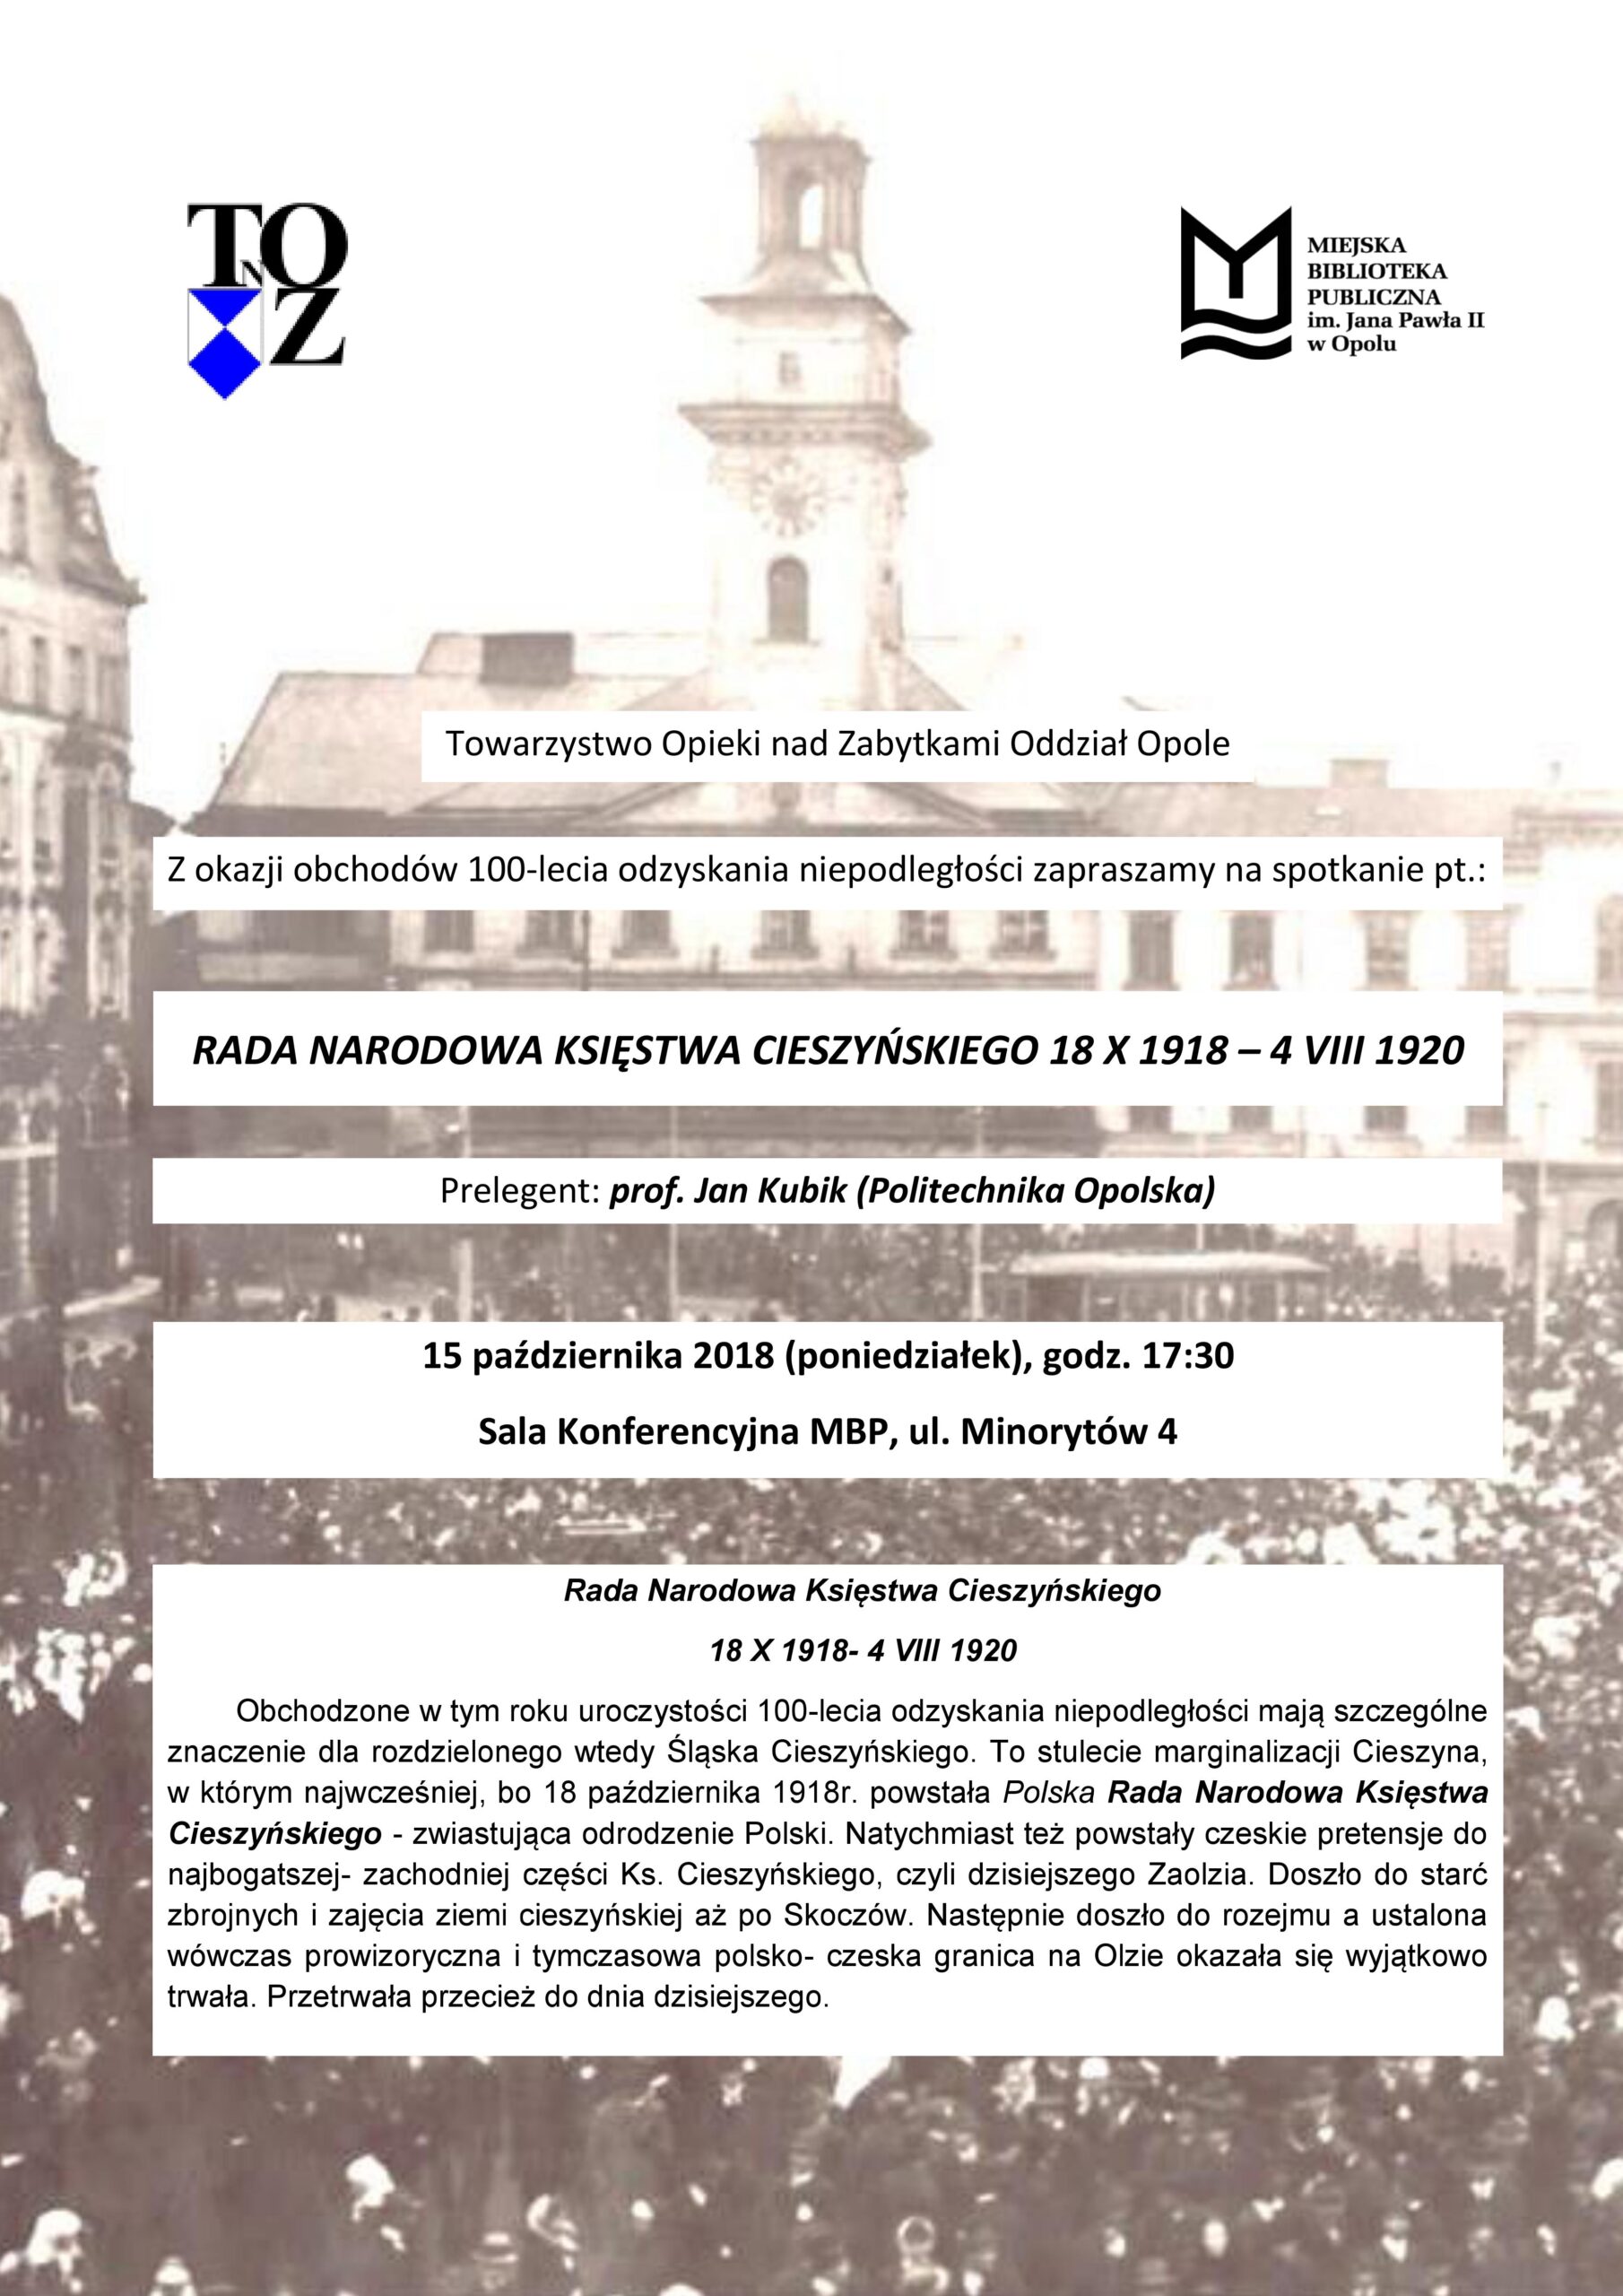 Rada Narodowa Księstwa Cieszyńskiego 18 X 1918- 4 VIII 1920